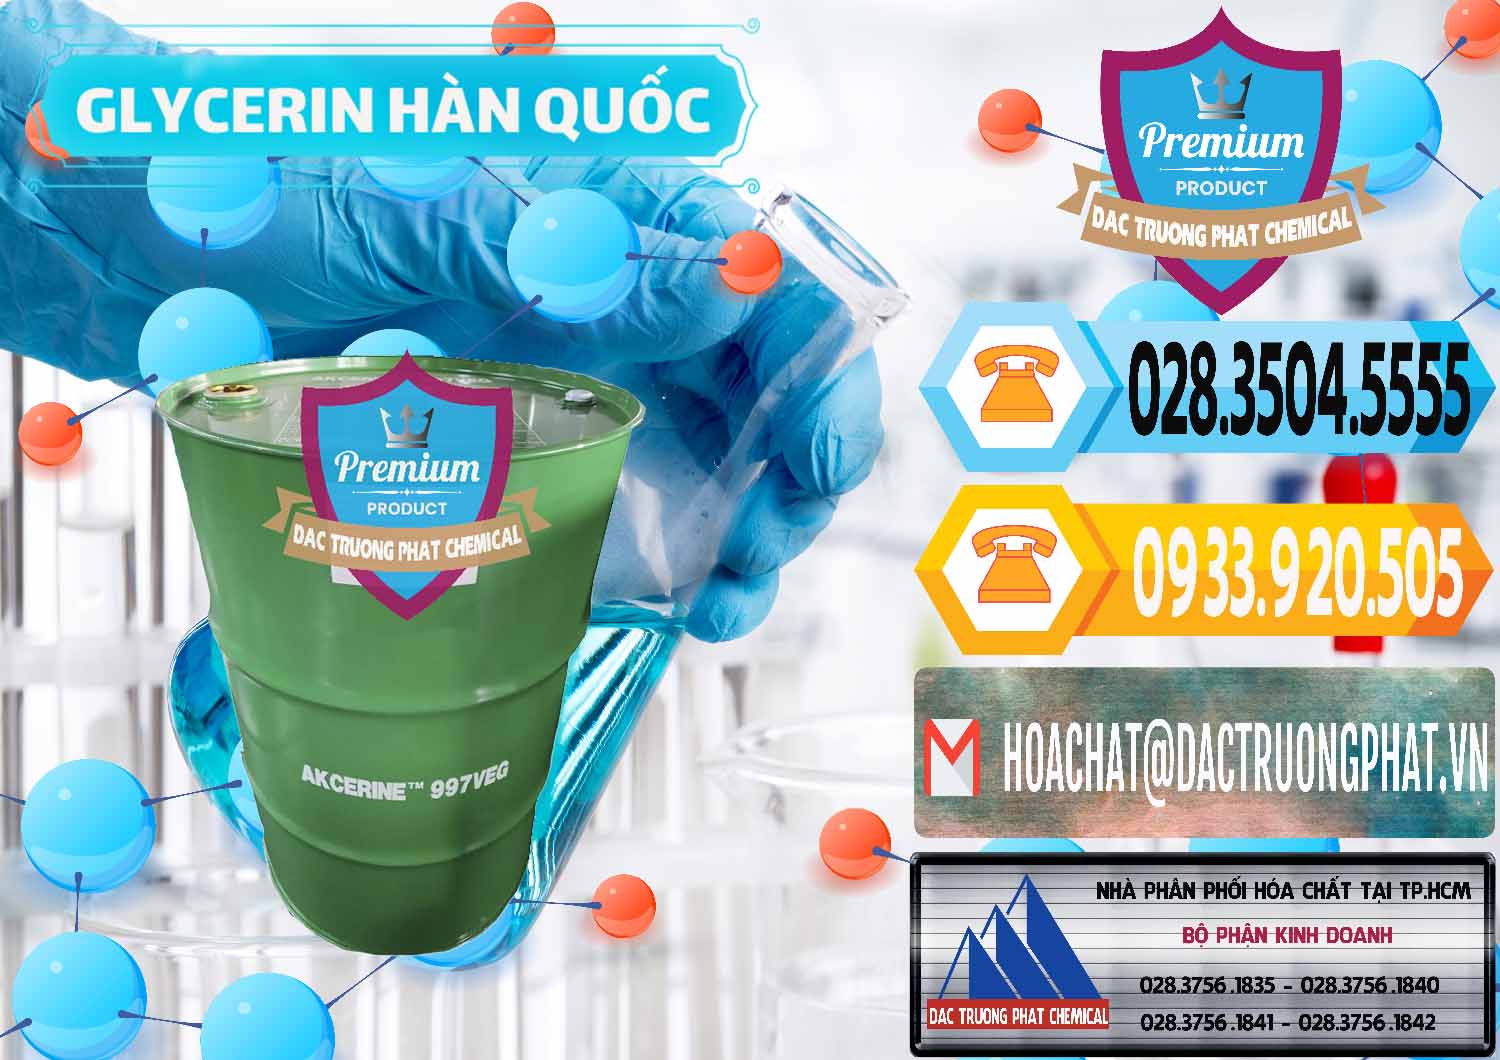 Nơi phân phối và bán Glycerin – C3H8O3 Hàn Quốc Korea - 0403 - Chuyên bán & phân phối hóa chất tại TP.HCM - hoachattayrua.net